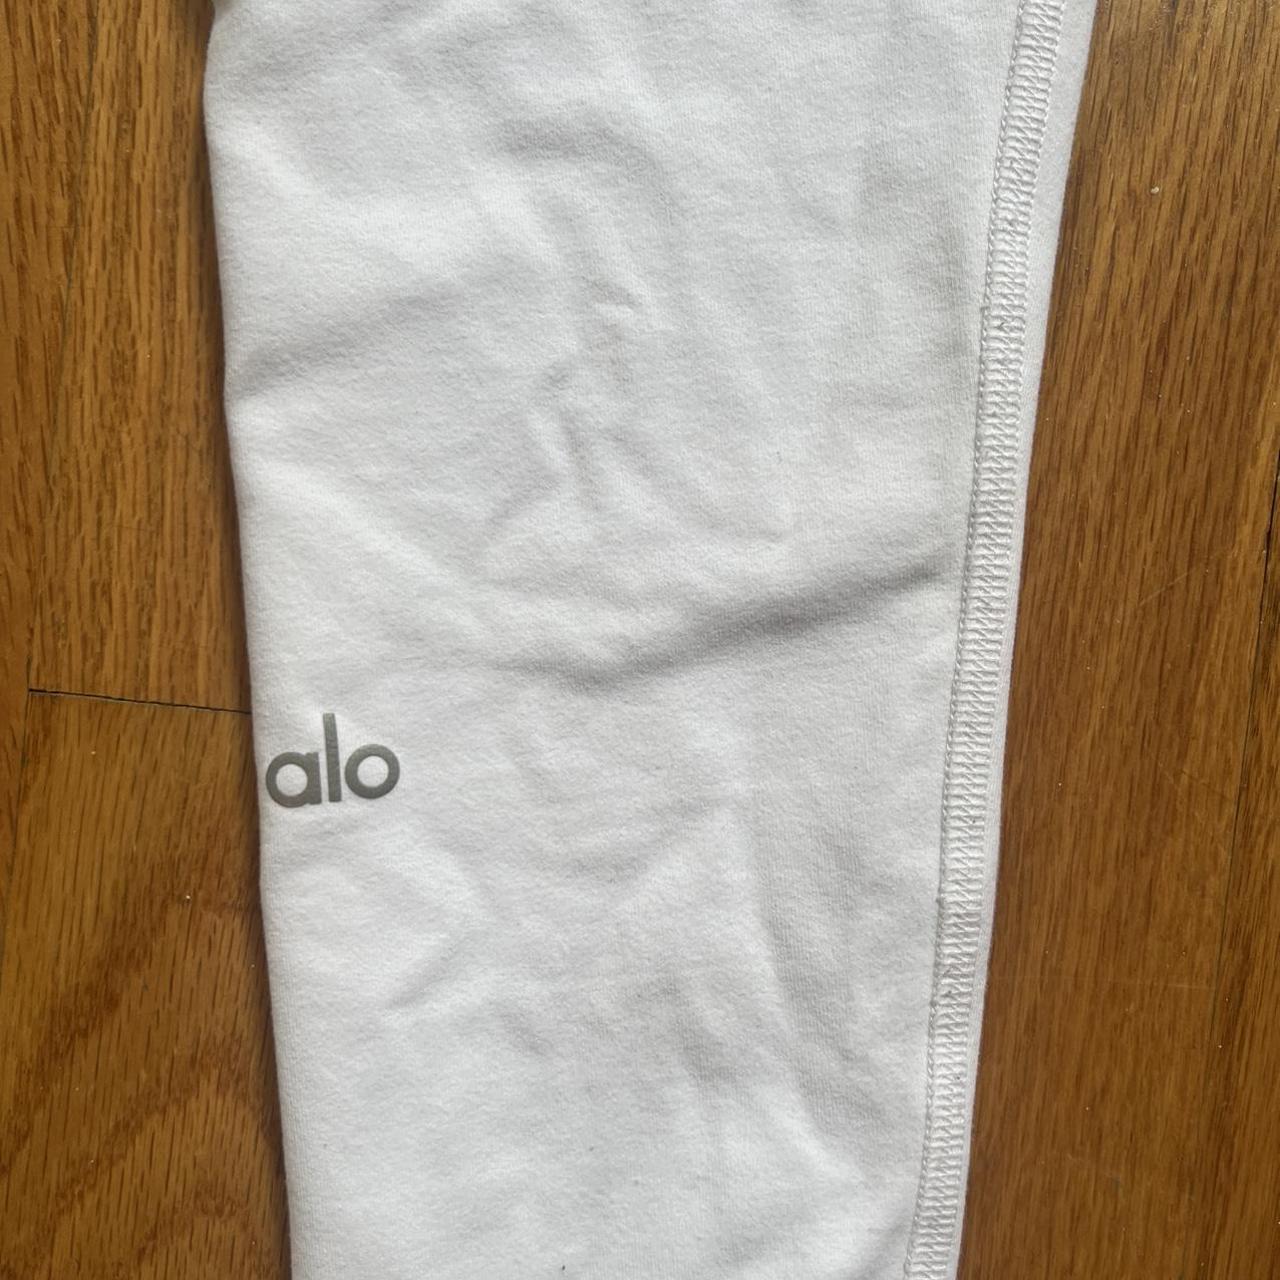 alo yoga white leggings in a true XXS / 00-0 sizing - Depop